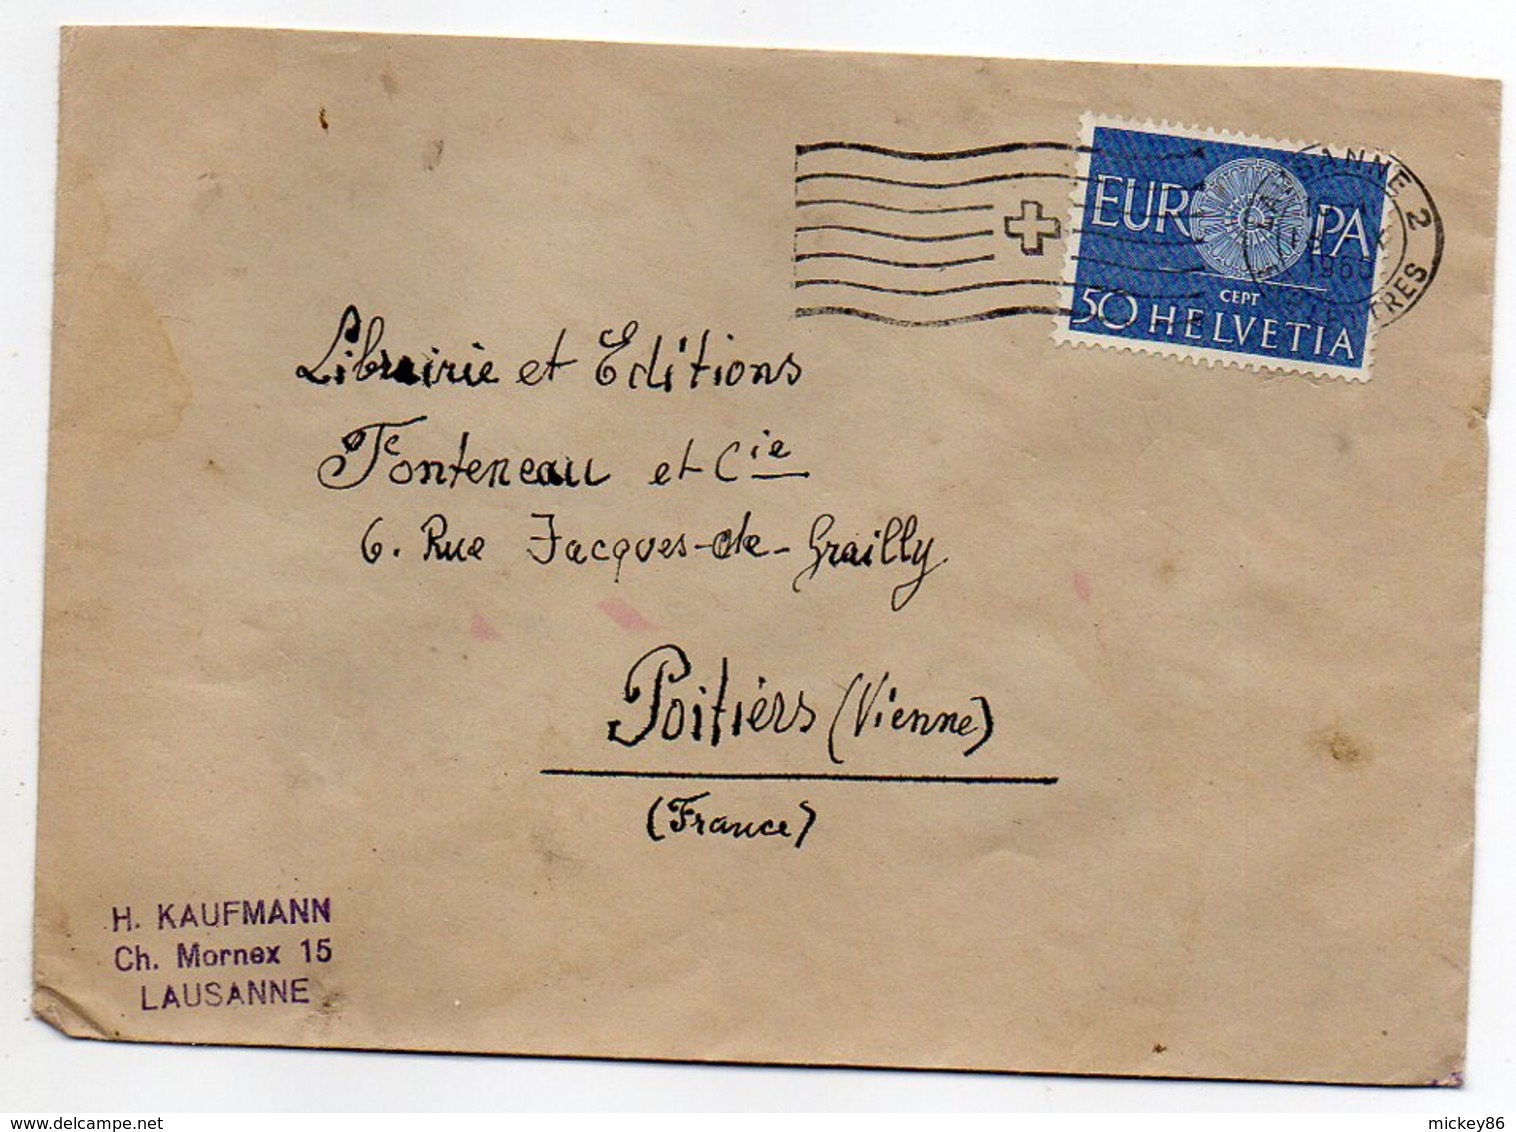 Suisse-1960--Lettre De LAUSANNE Pour POITIERS-86 (France)--timbre EUROPA Seul Sur Lettre-cachet - Covers & Documents